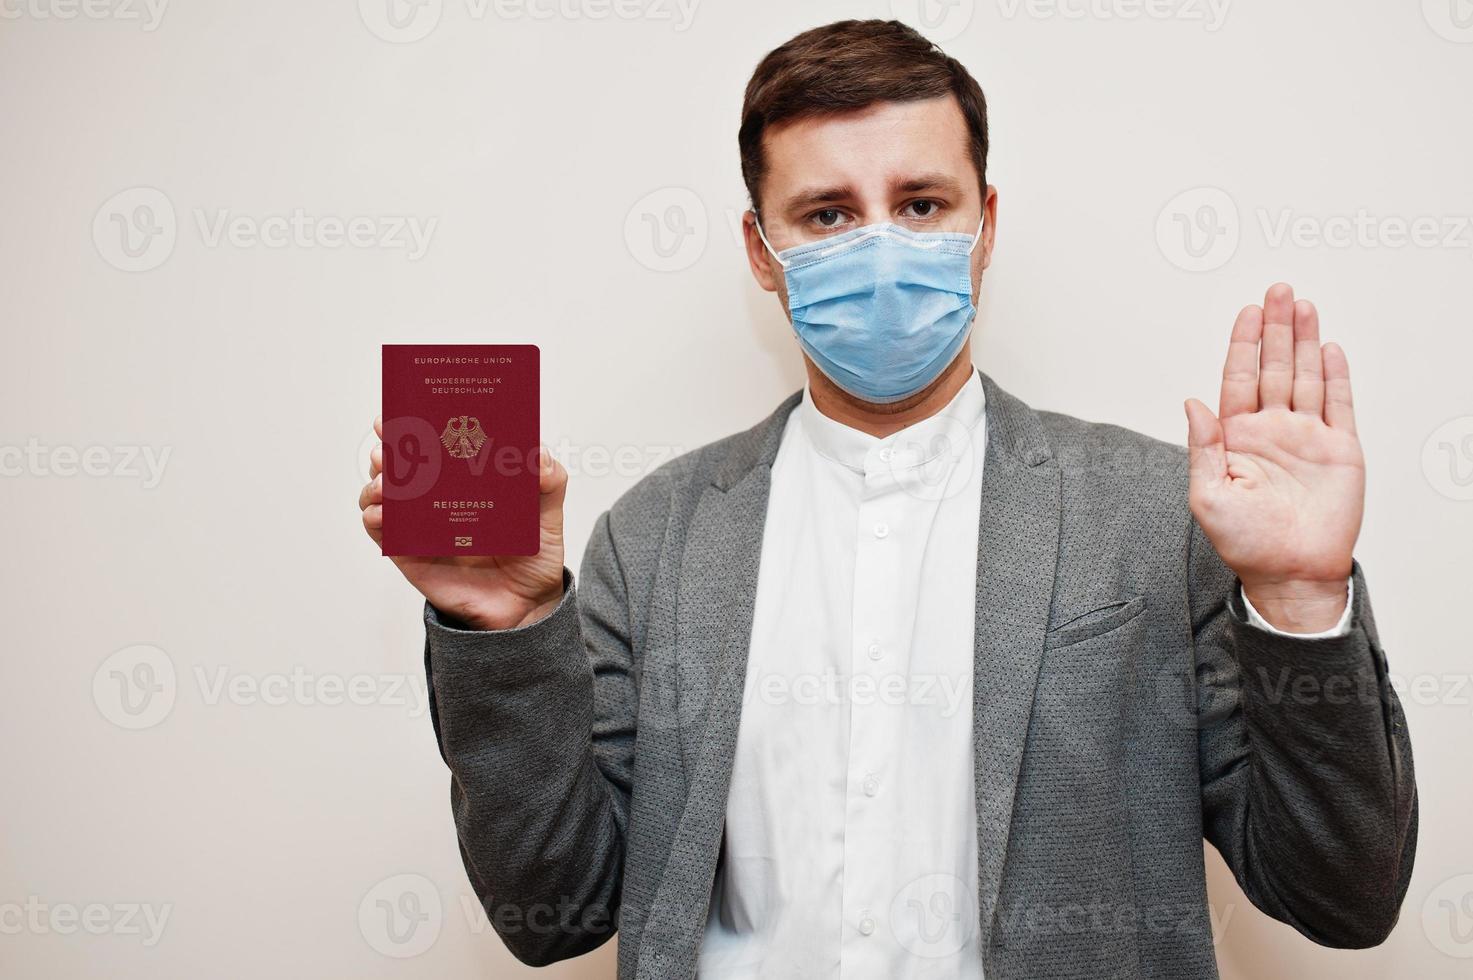 homem europeu com roupa formal e máscara facial, mostre o passaporte da alemanha com a mão do sinal de stop. bloqueio de coronavírus no conceito de país da europa. foto